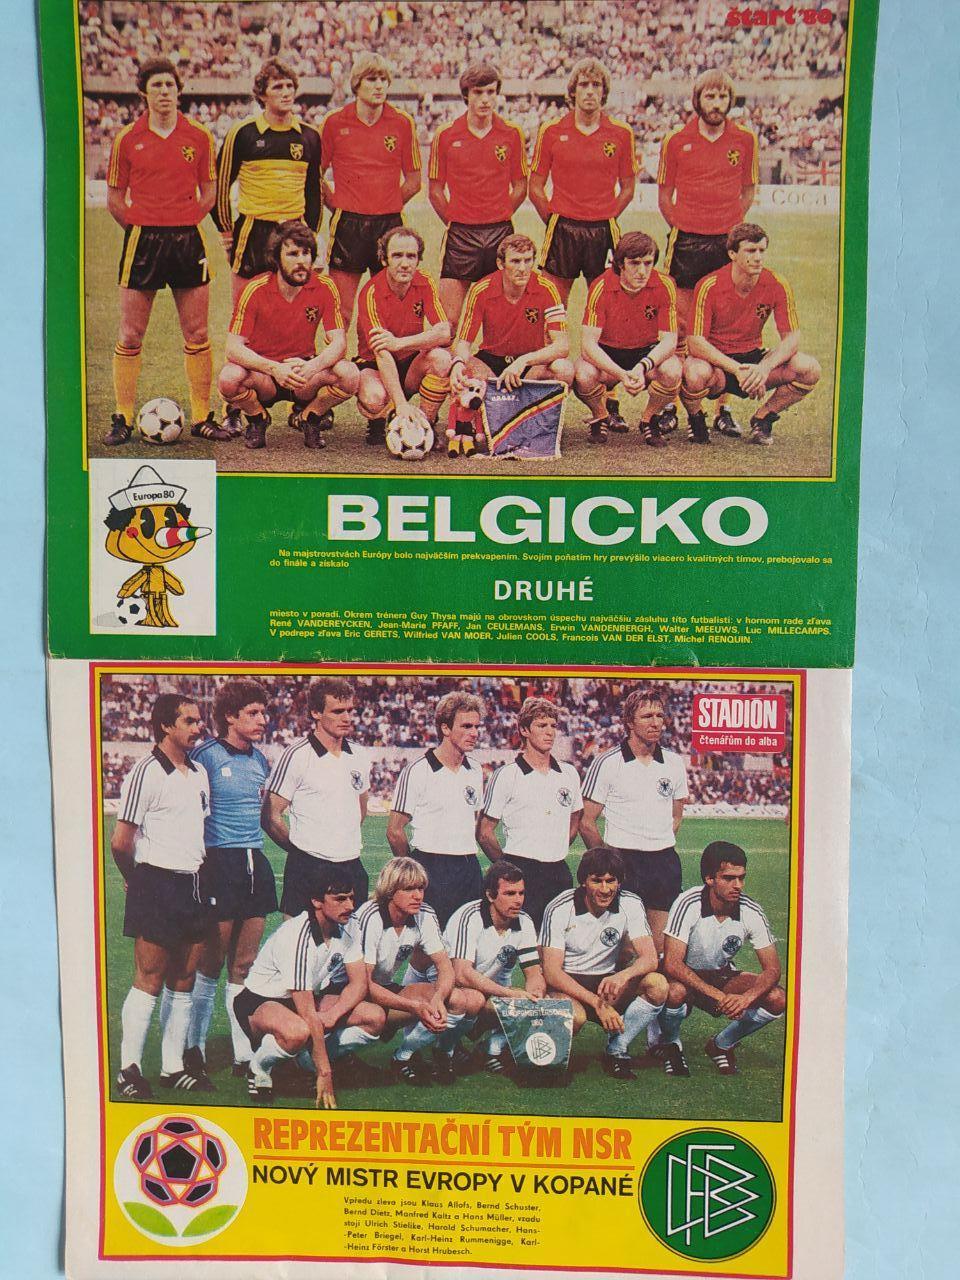 Спецвыпуск Старт и Стадион Чехия № 28 за 1980 г. ЧЕ футбол 1980 год в Италии 7